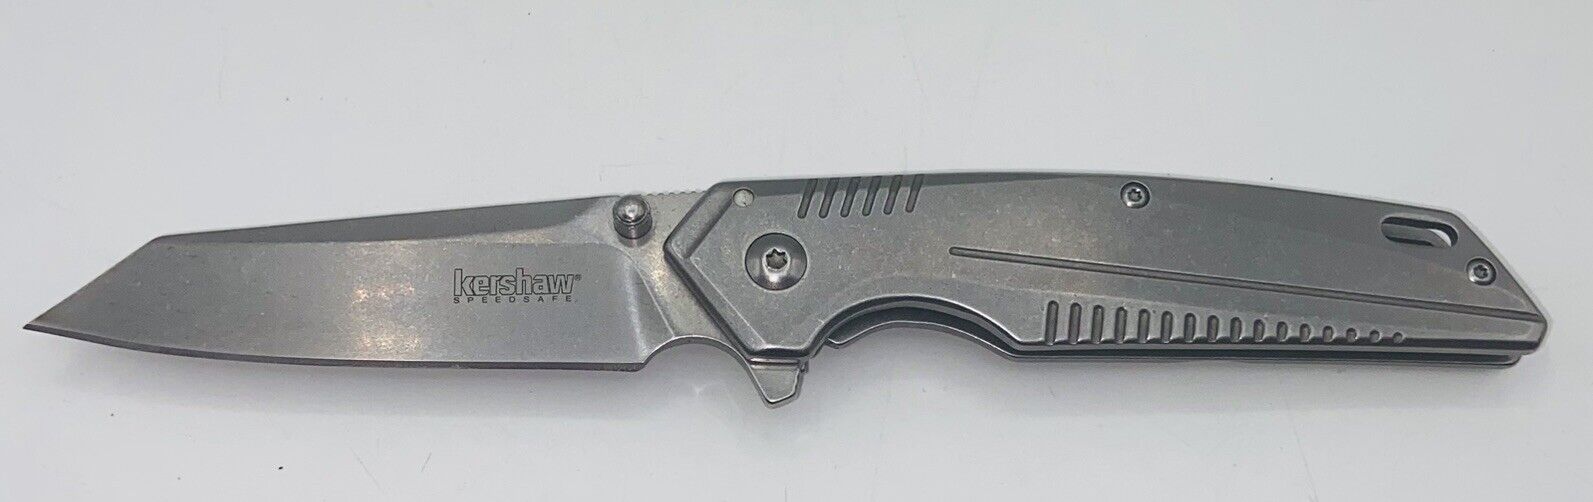 Kershaw 1350 Pocket Knife Tanto Plain 3” Blade Belt Clip Liner Lock